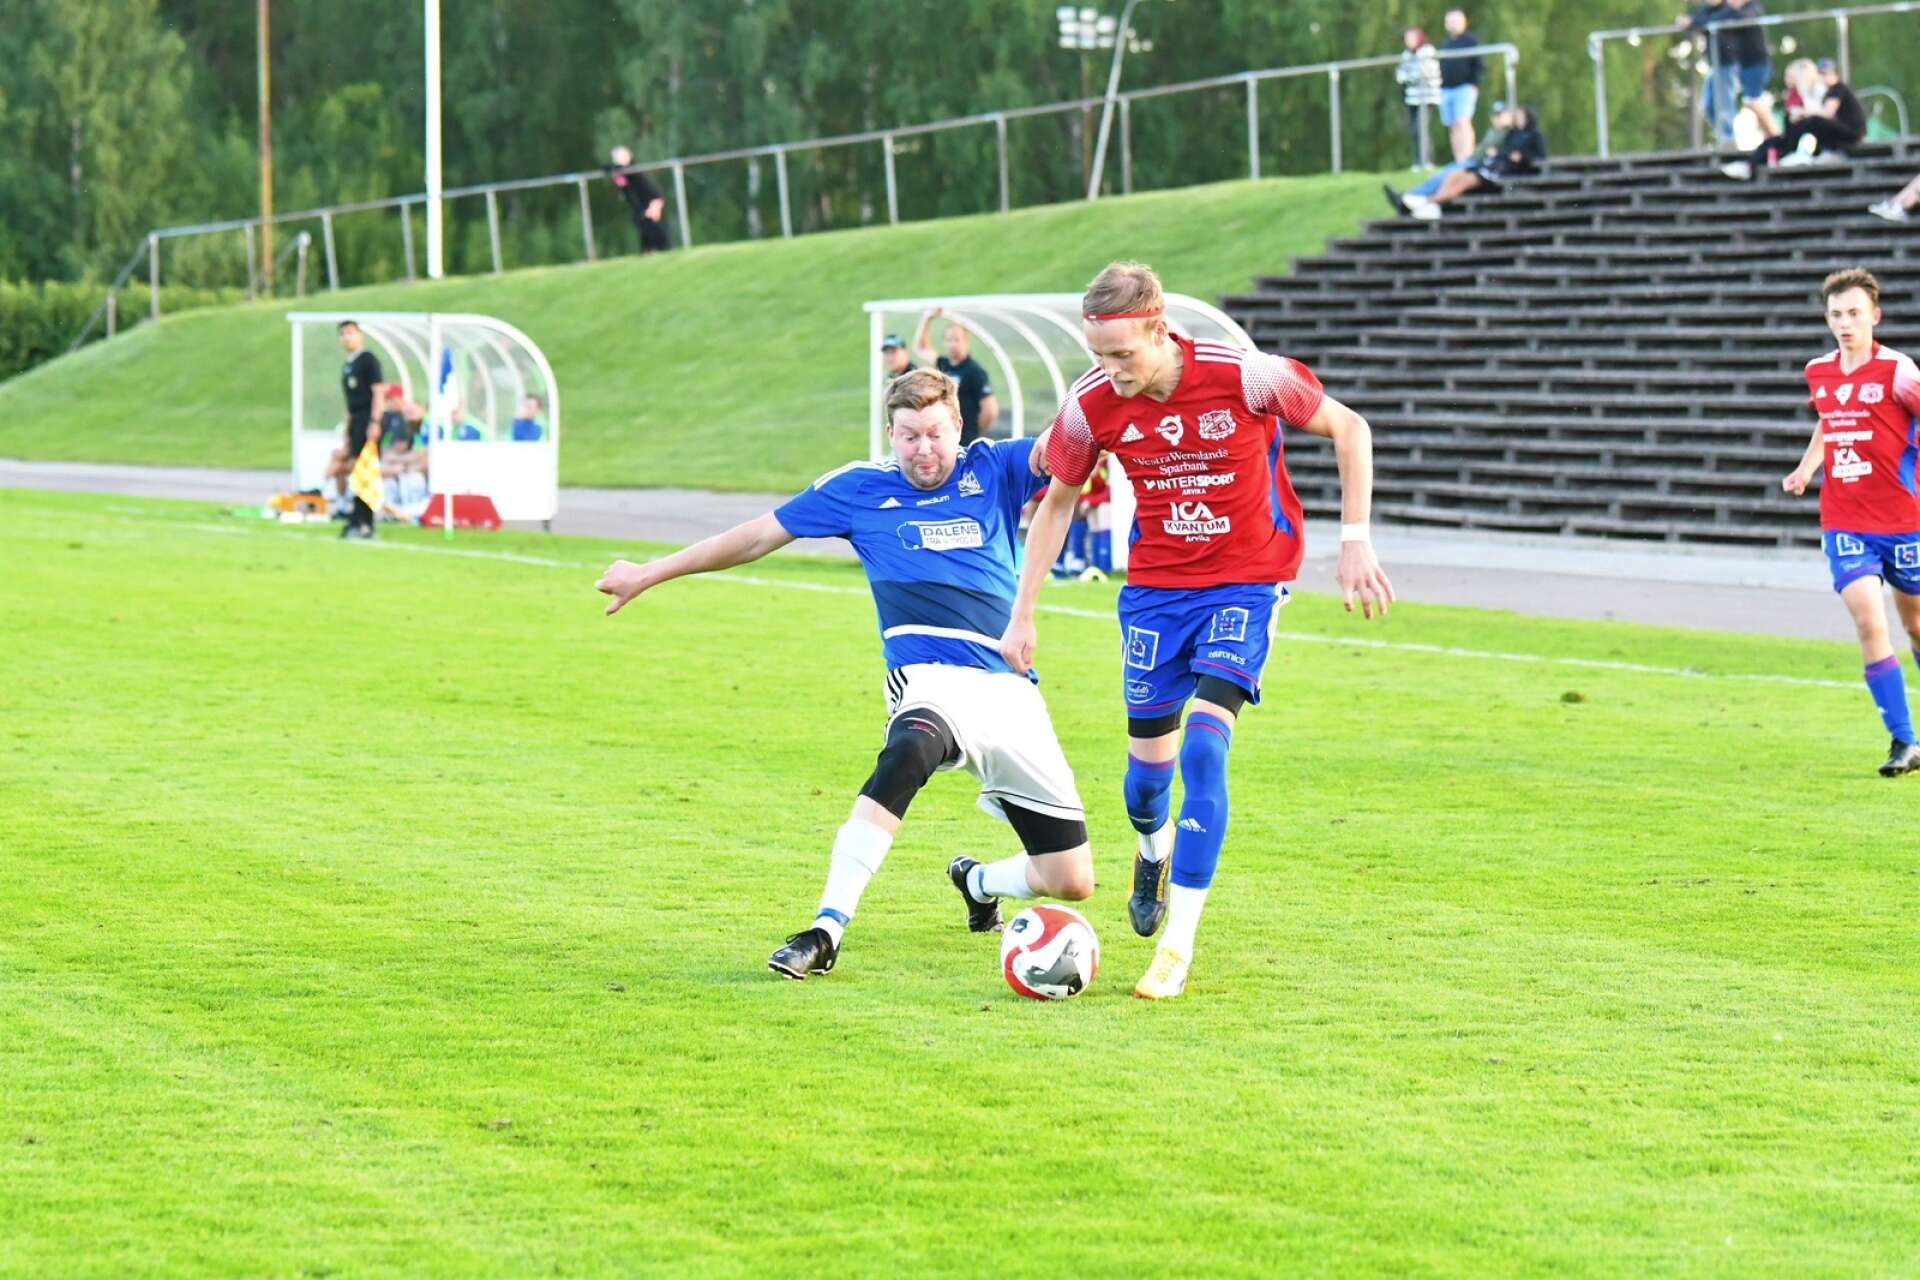 Arvika U och Värmskog utmanade varandra i ett derby med flera målchanser. Peter Ek stod för Arvikas tredje mål i matchen. 